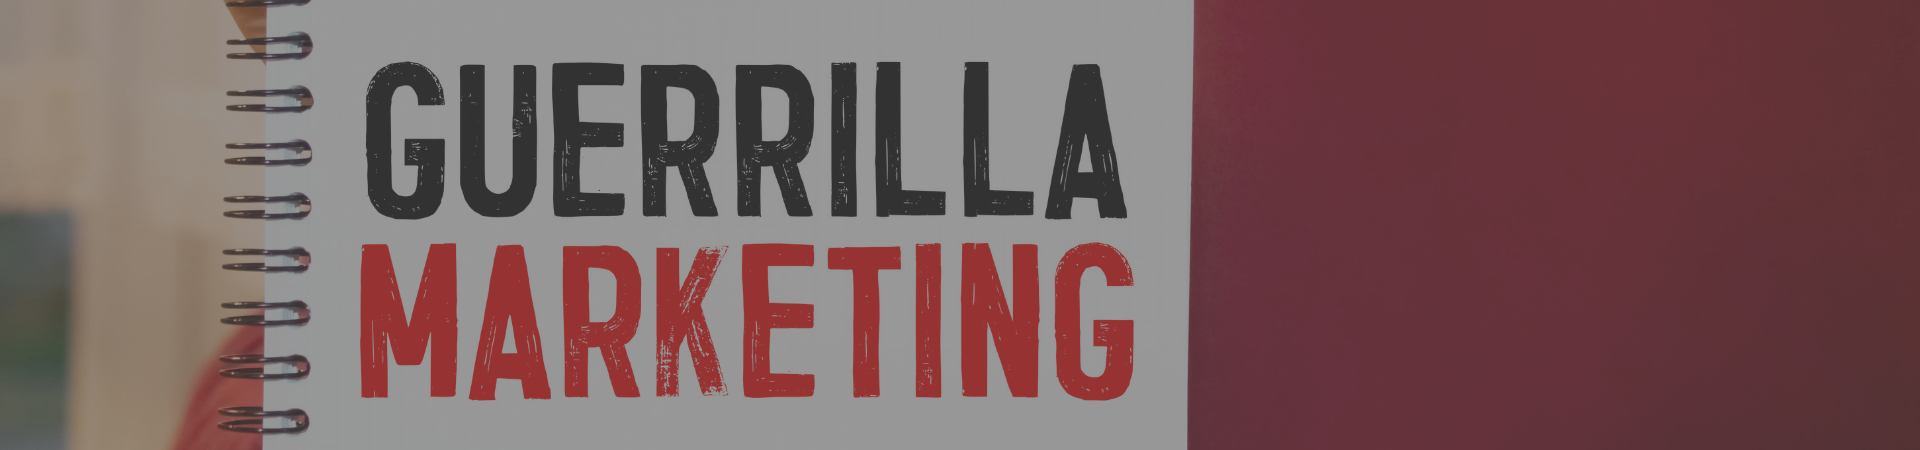 marketing de guerrilla